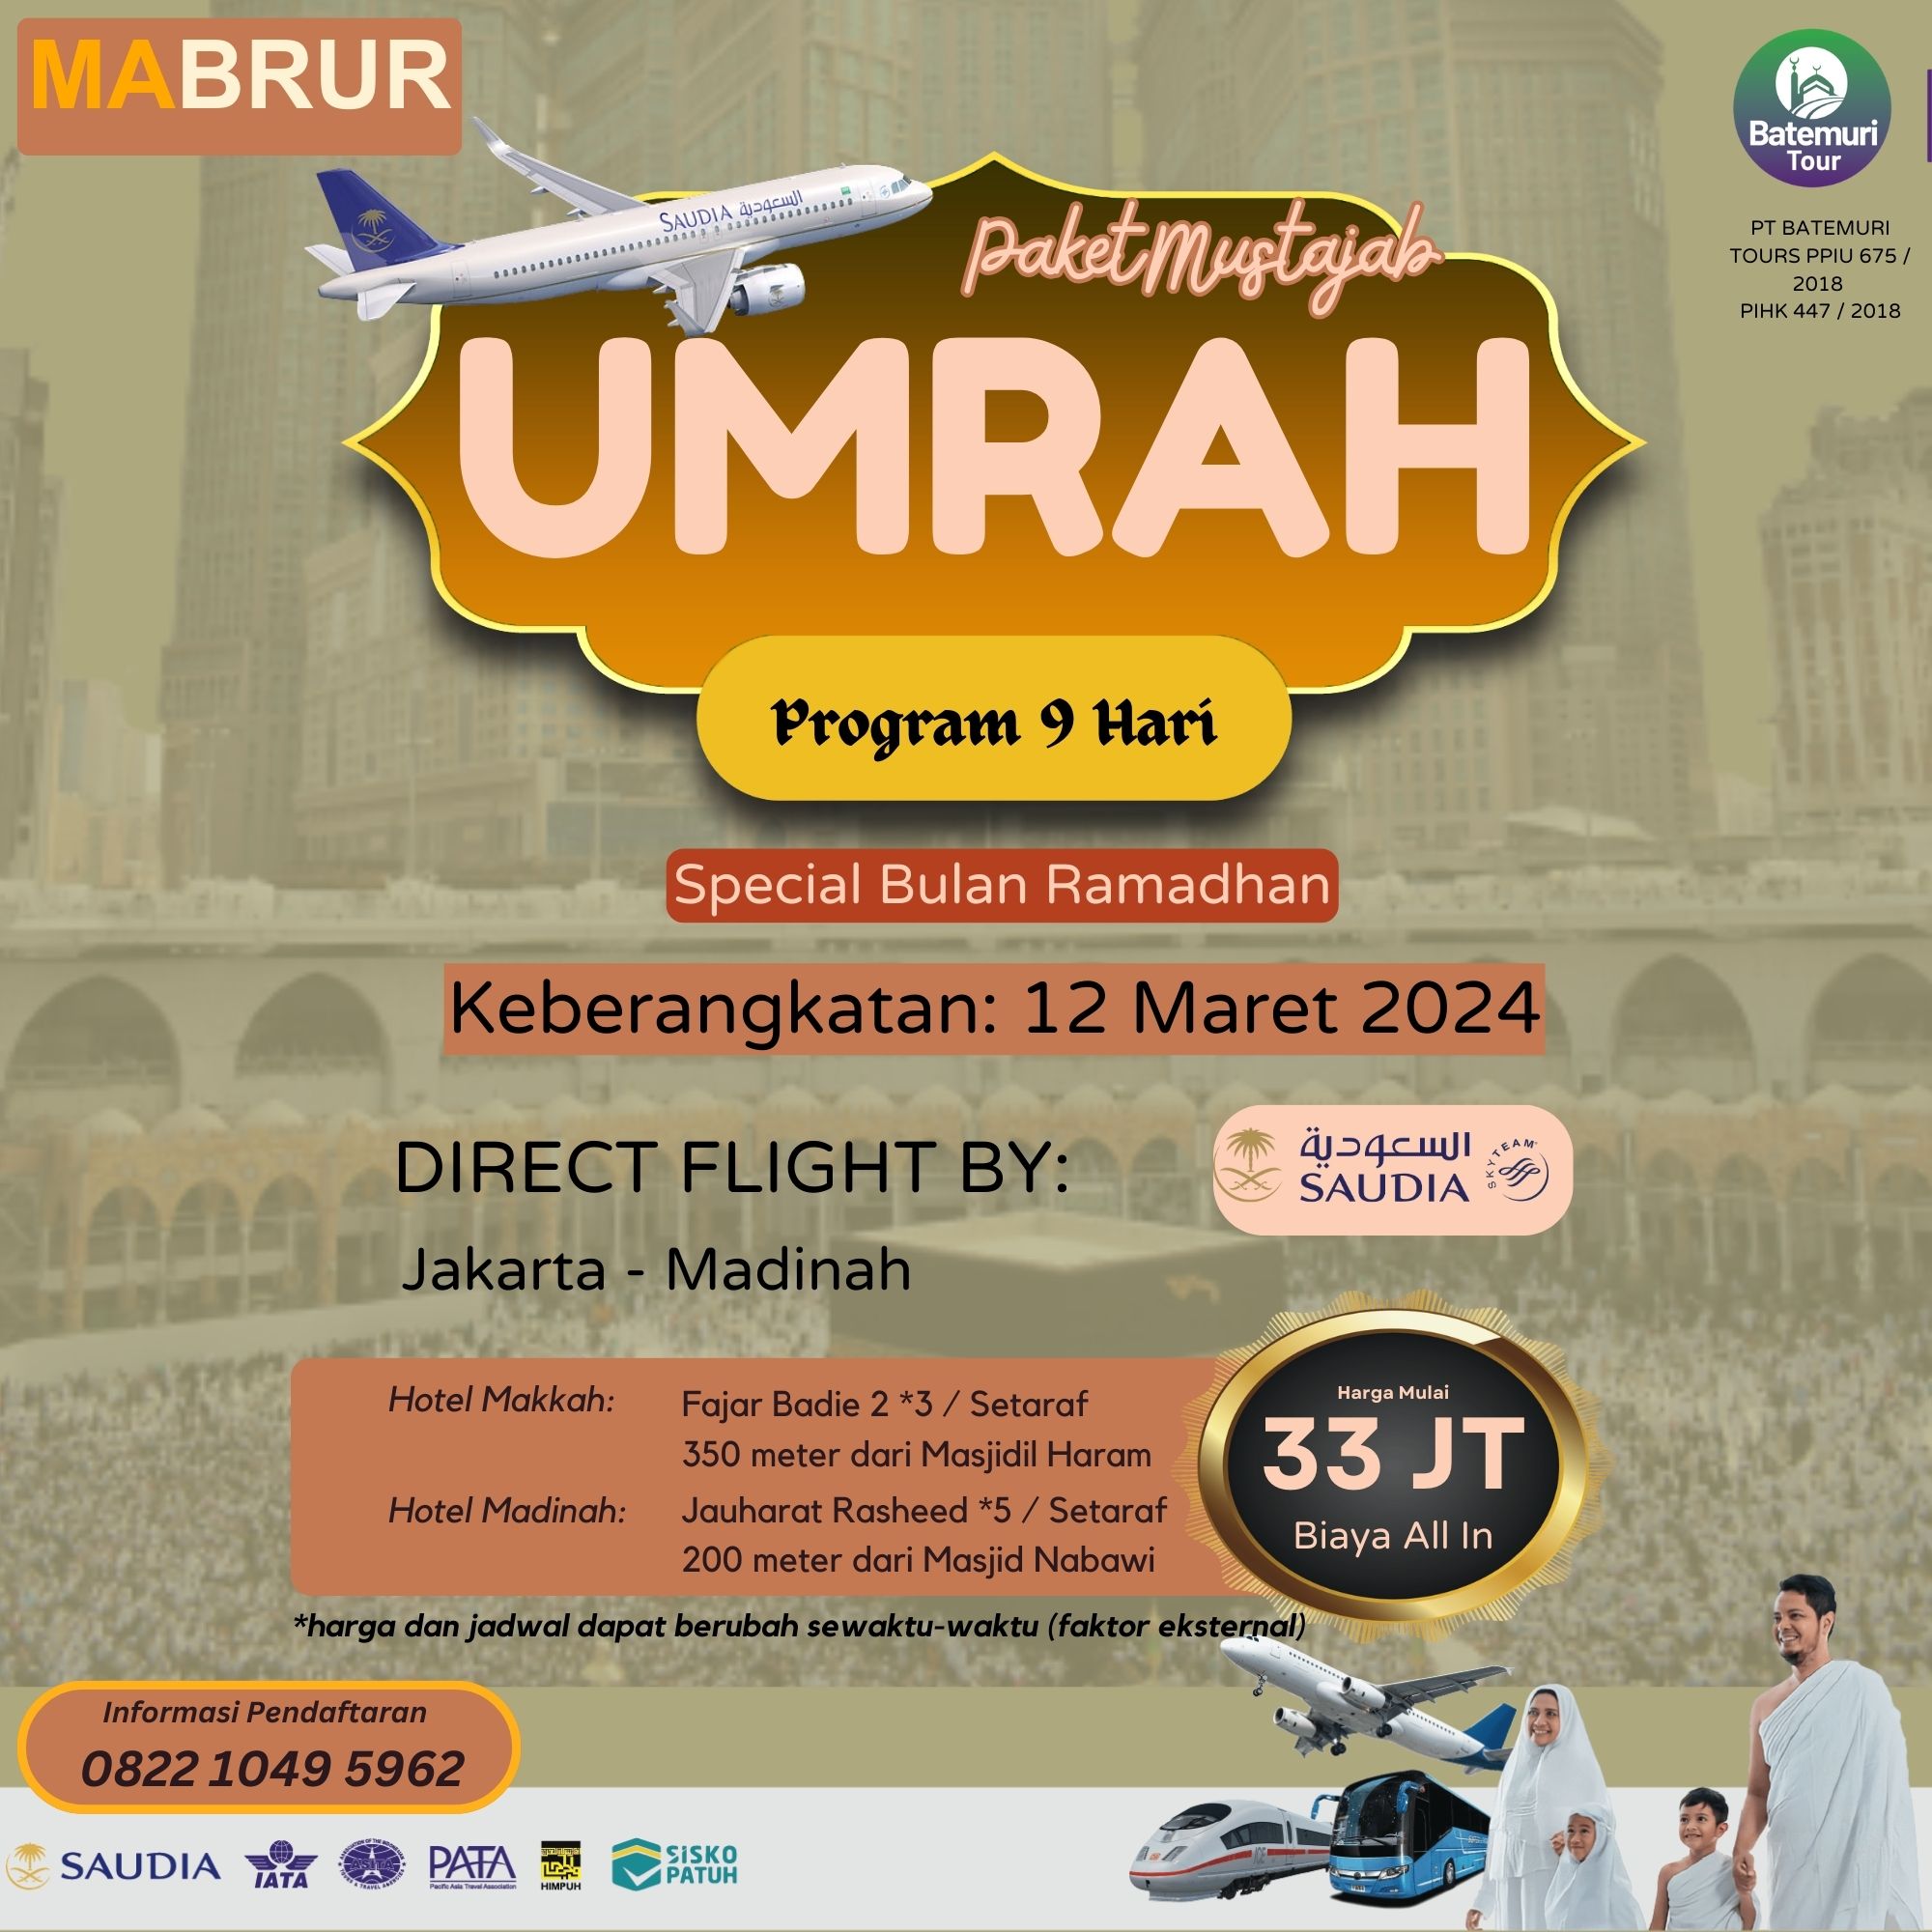 Umrah Ramadhan 1445 H, Paket 9 Hari, Batemuri Tour, Keberangkatan: 12 Maret 2024